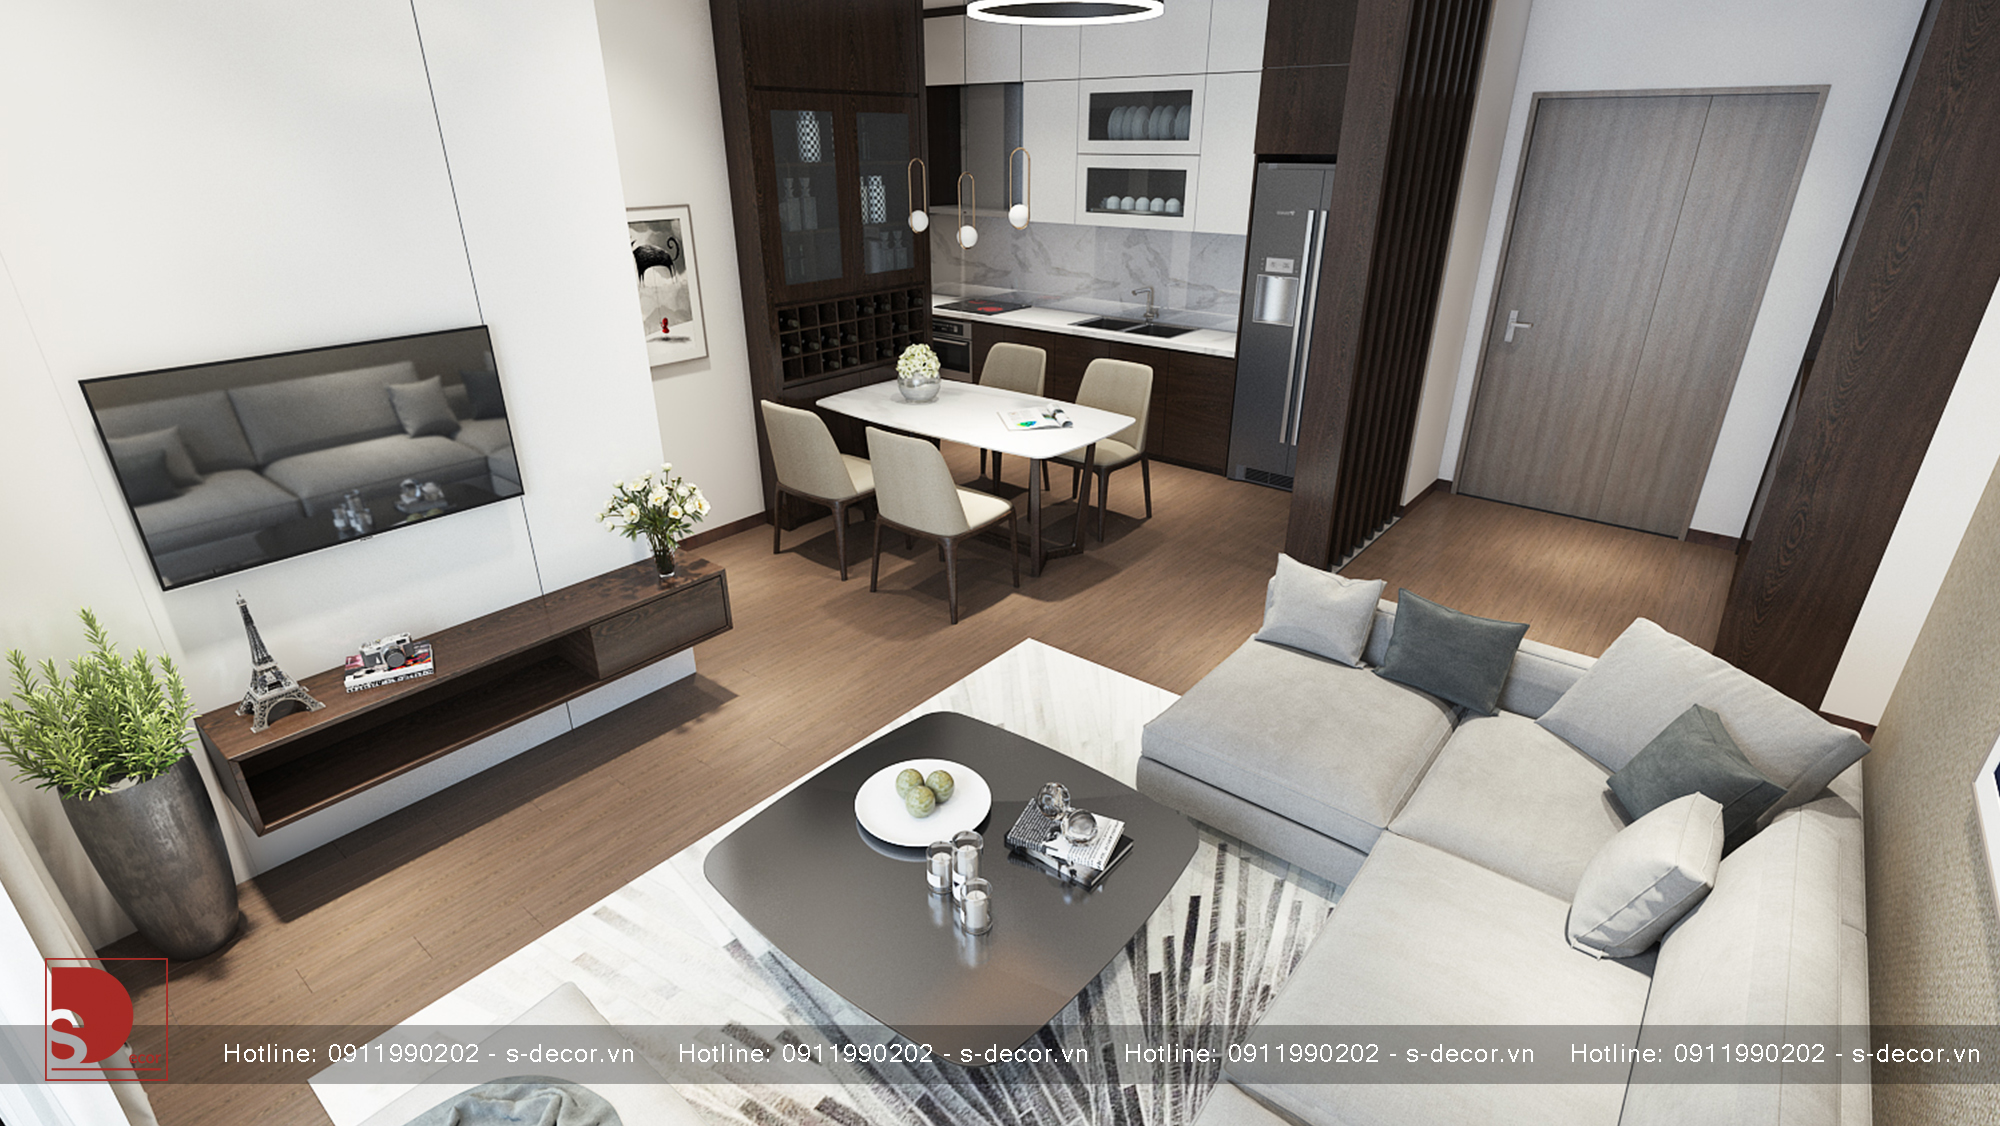 Những ý tưởng thiết kế nội thất chung cư diện tích nhỏ như trong năm 2024 sẽ mang lại cho quý khách không gian sống đầy tiện nghi và ấm cúng. Với sự sáng tạo và tinh tế trong thiết kế, không gian trong căn hộ sẽ được tối ưu hóa để giúp quý khách tận dụng tối đa diện tích căn hộ.